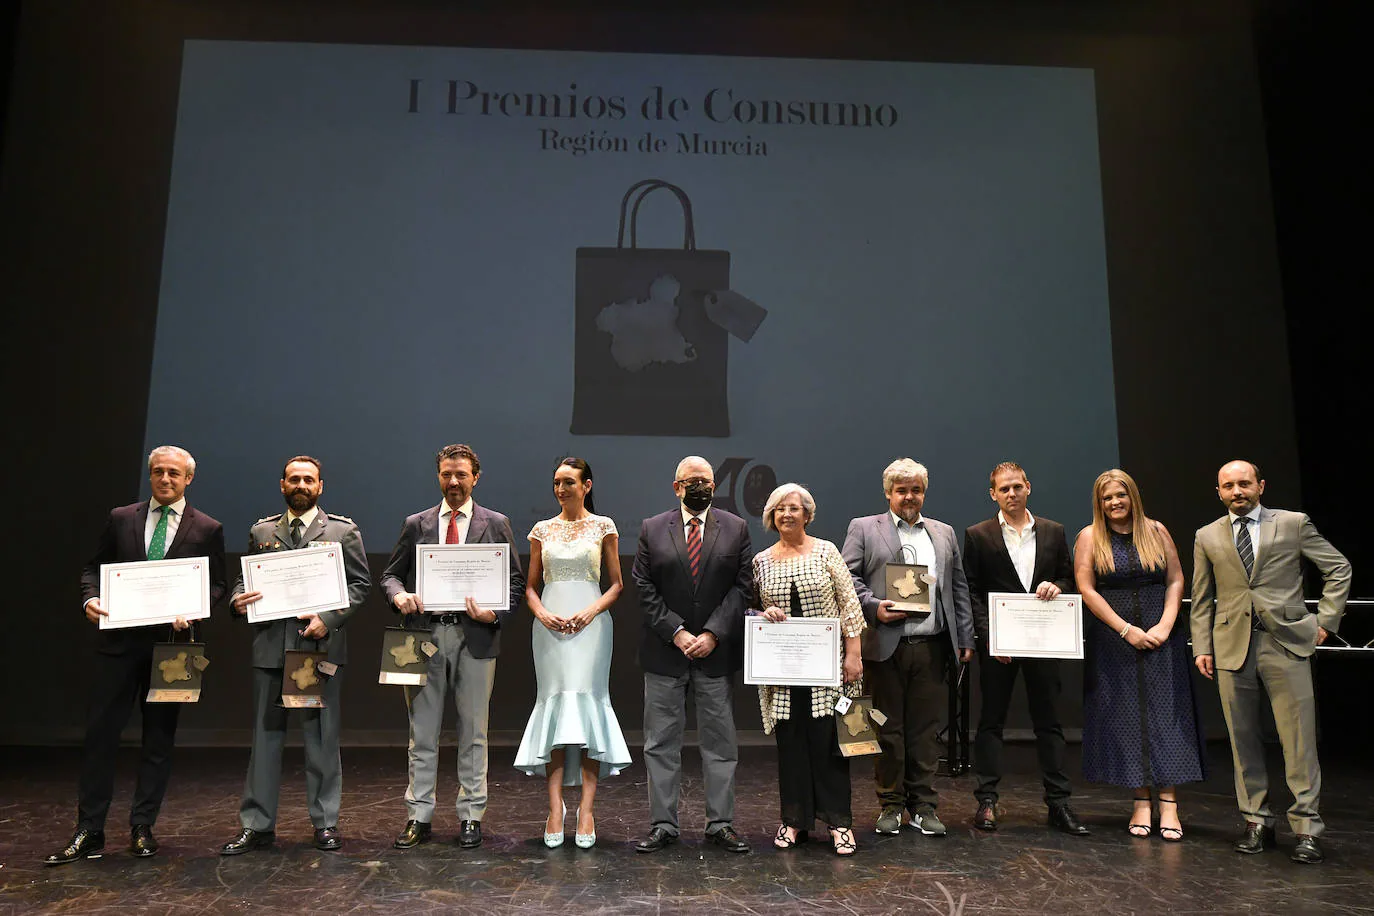 I Premios de Consumo Región de Murcia